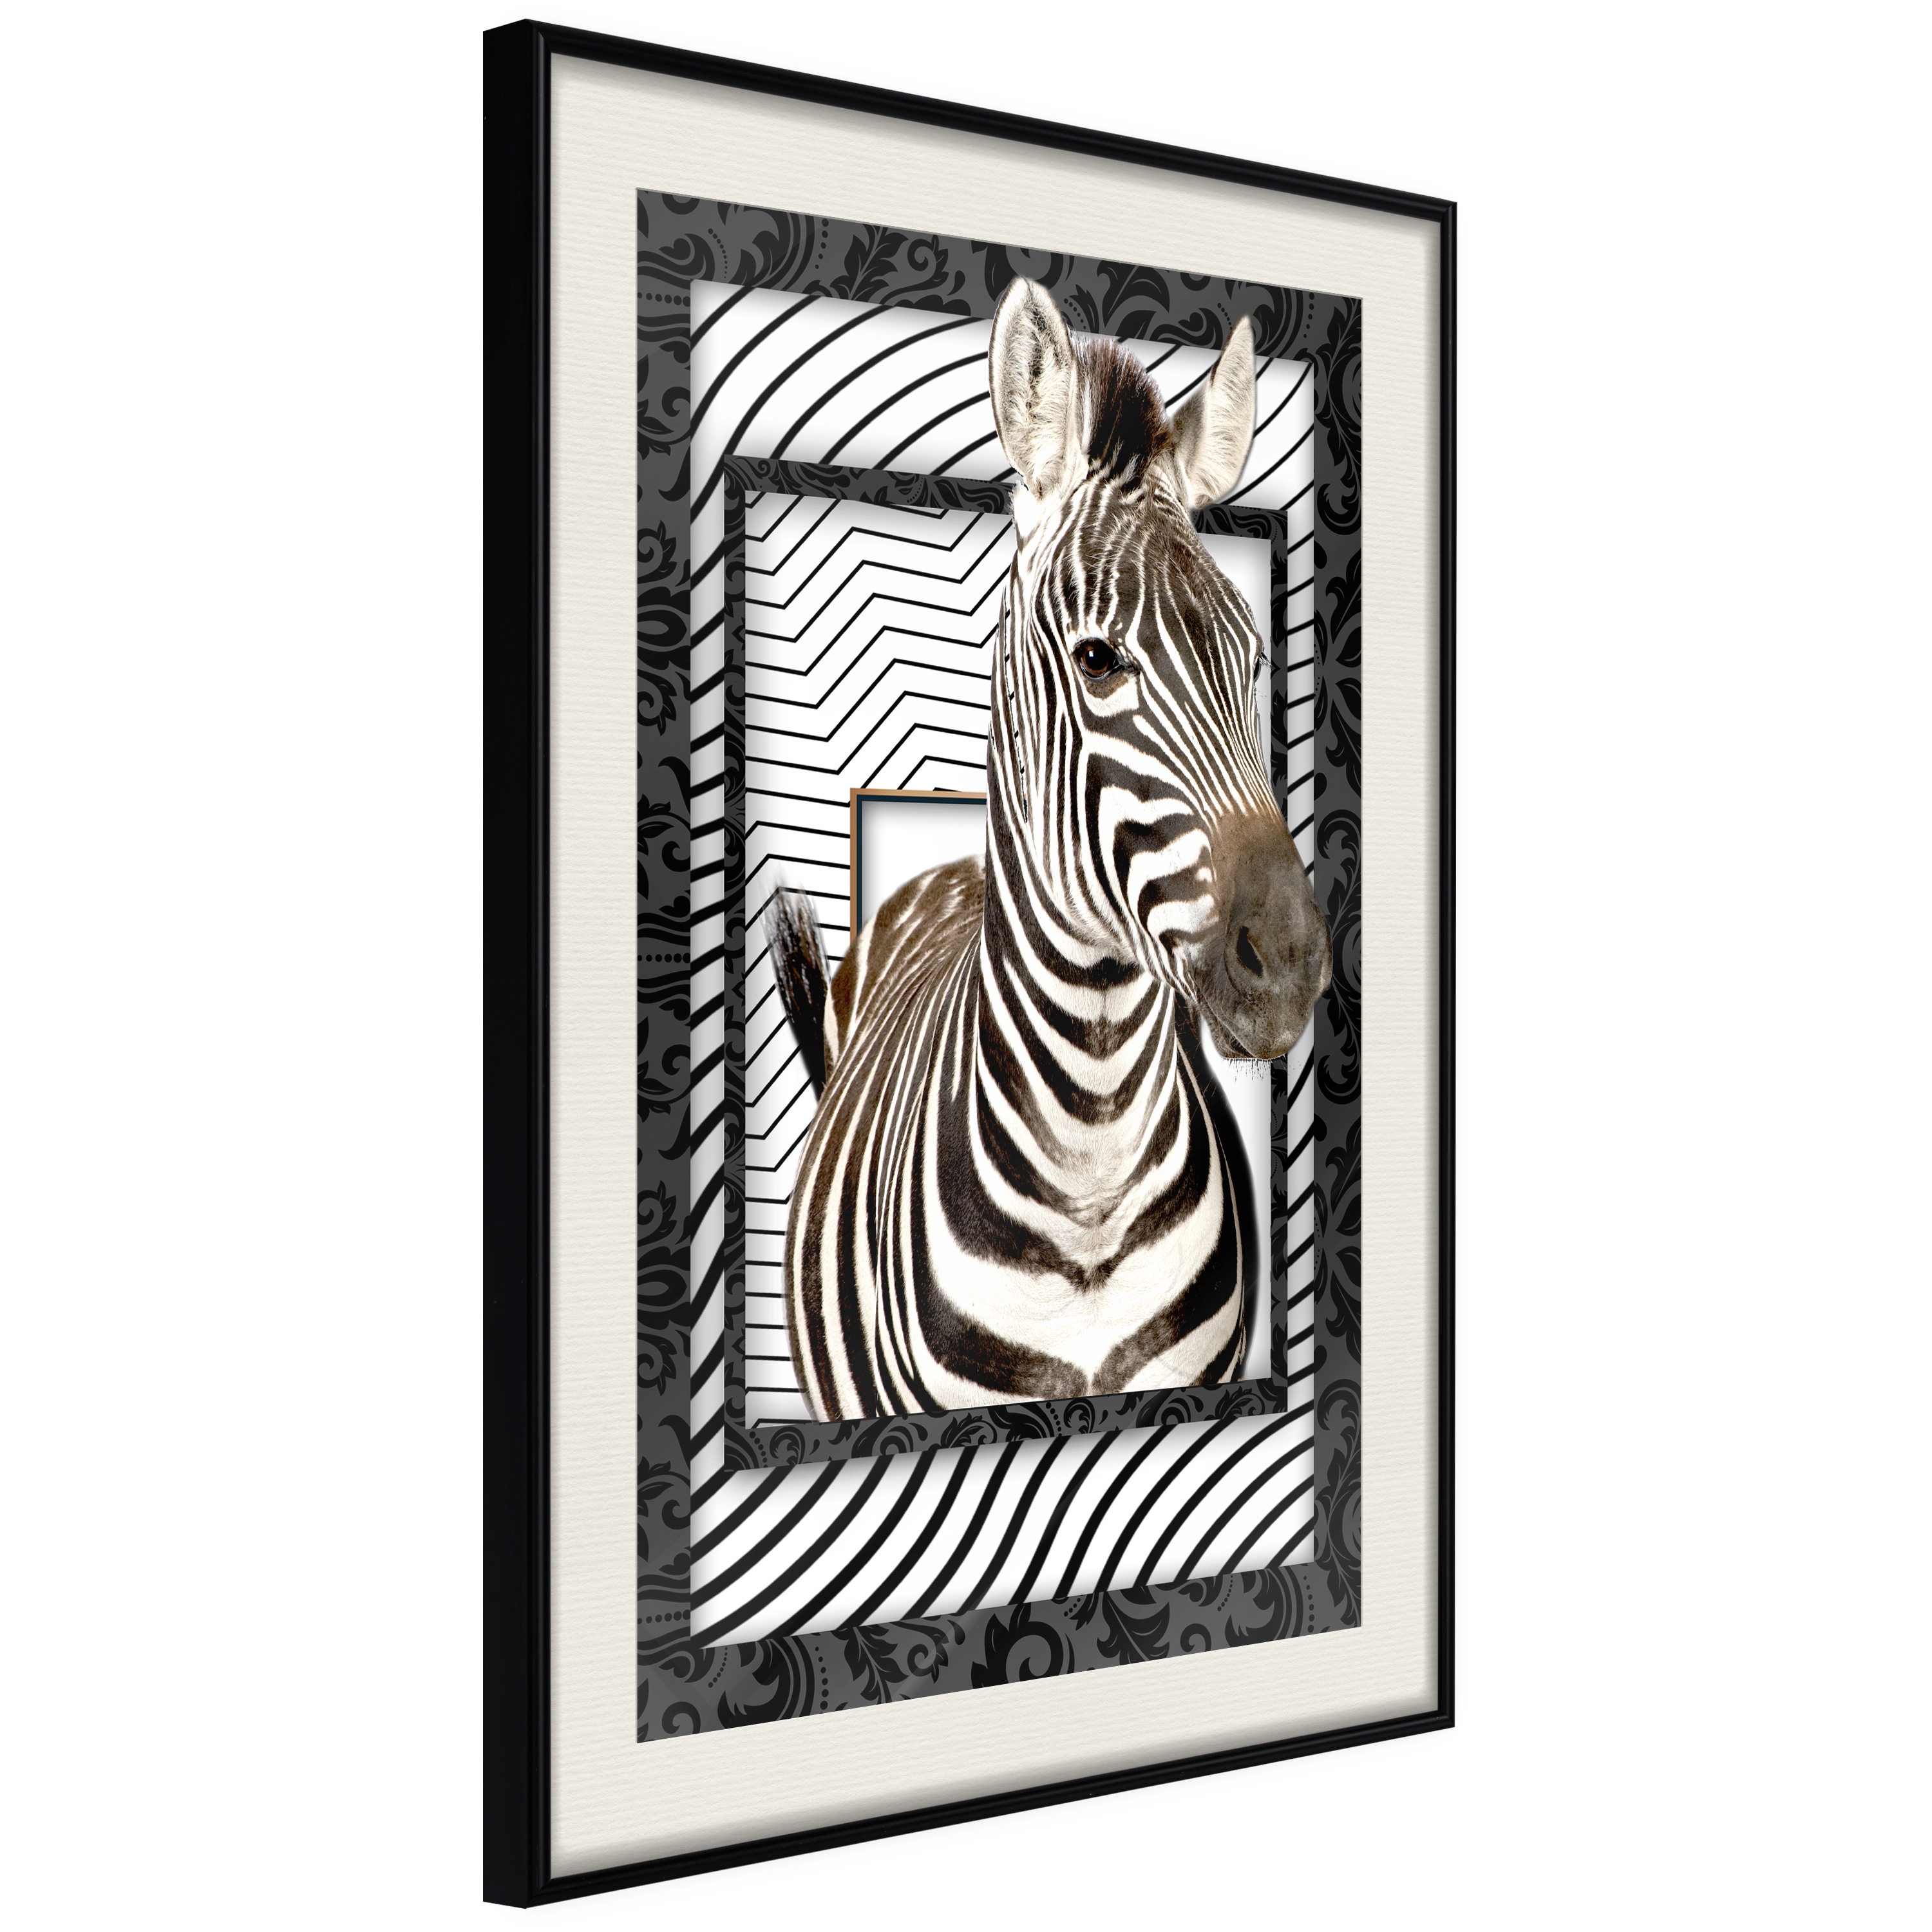 Poster - Zebra in the Frame - 40x60